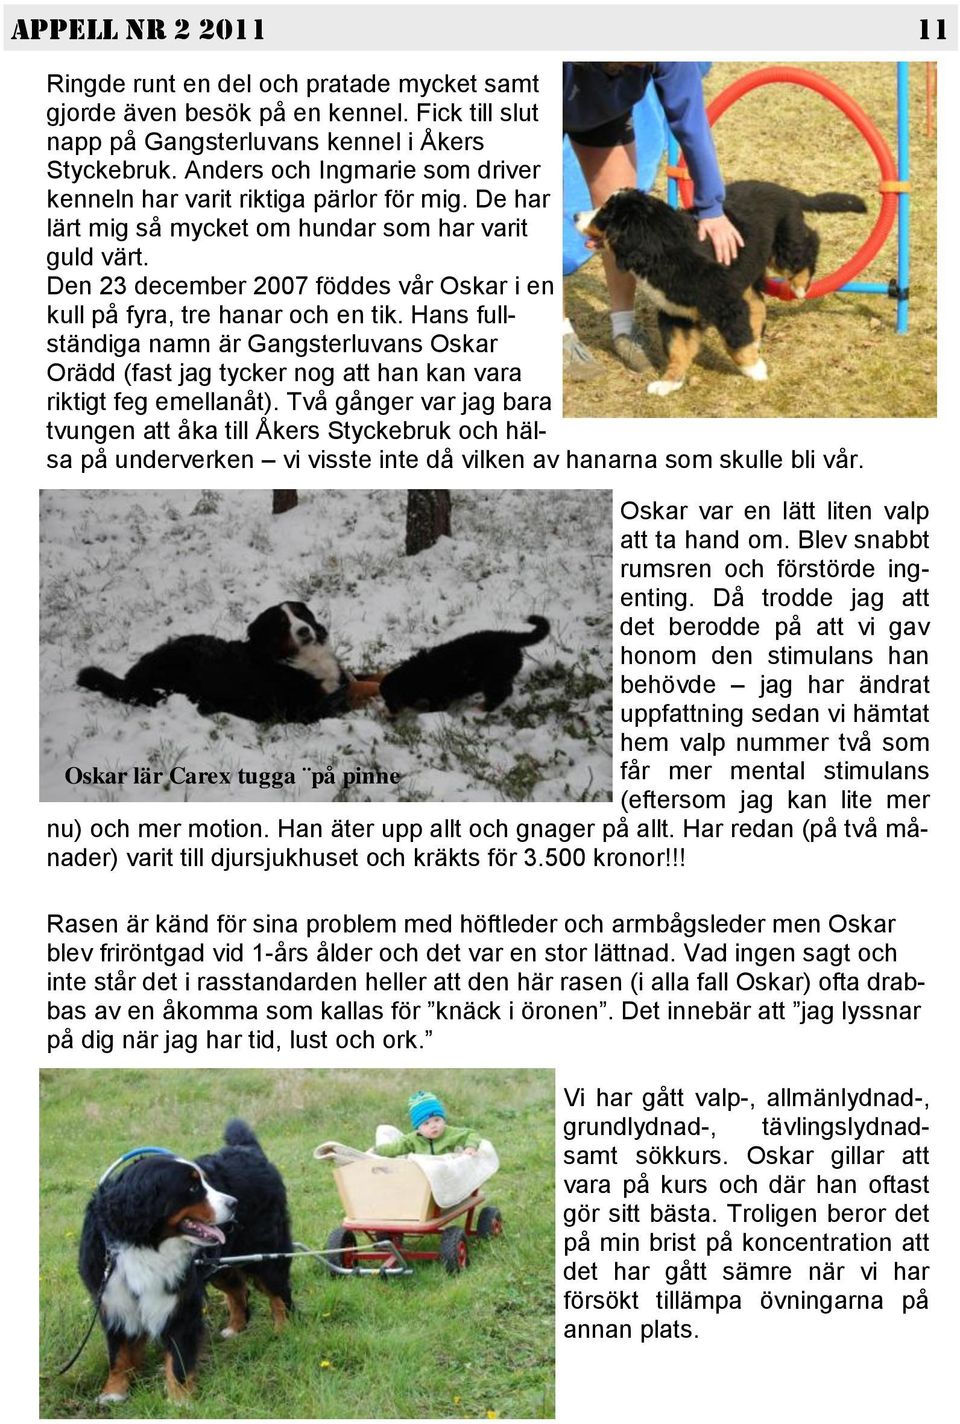 Den 23 december 2007 föddes vår Oskar i en kull på fyra, tre hanar och en tik. Hans fullständiga namn är Gangsterluvans Oskar Orädd (fast jag tycker nog att han kan vara riktigt feg emellanåt).